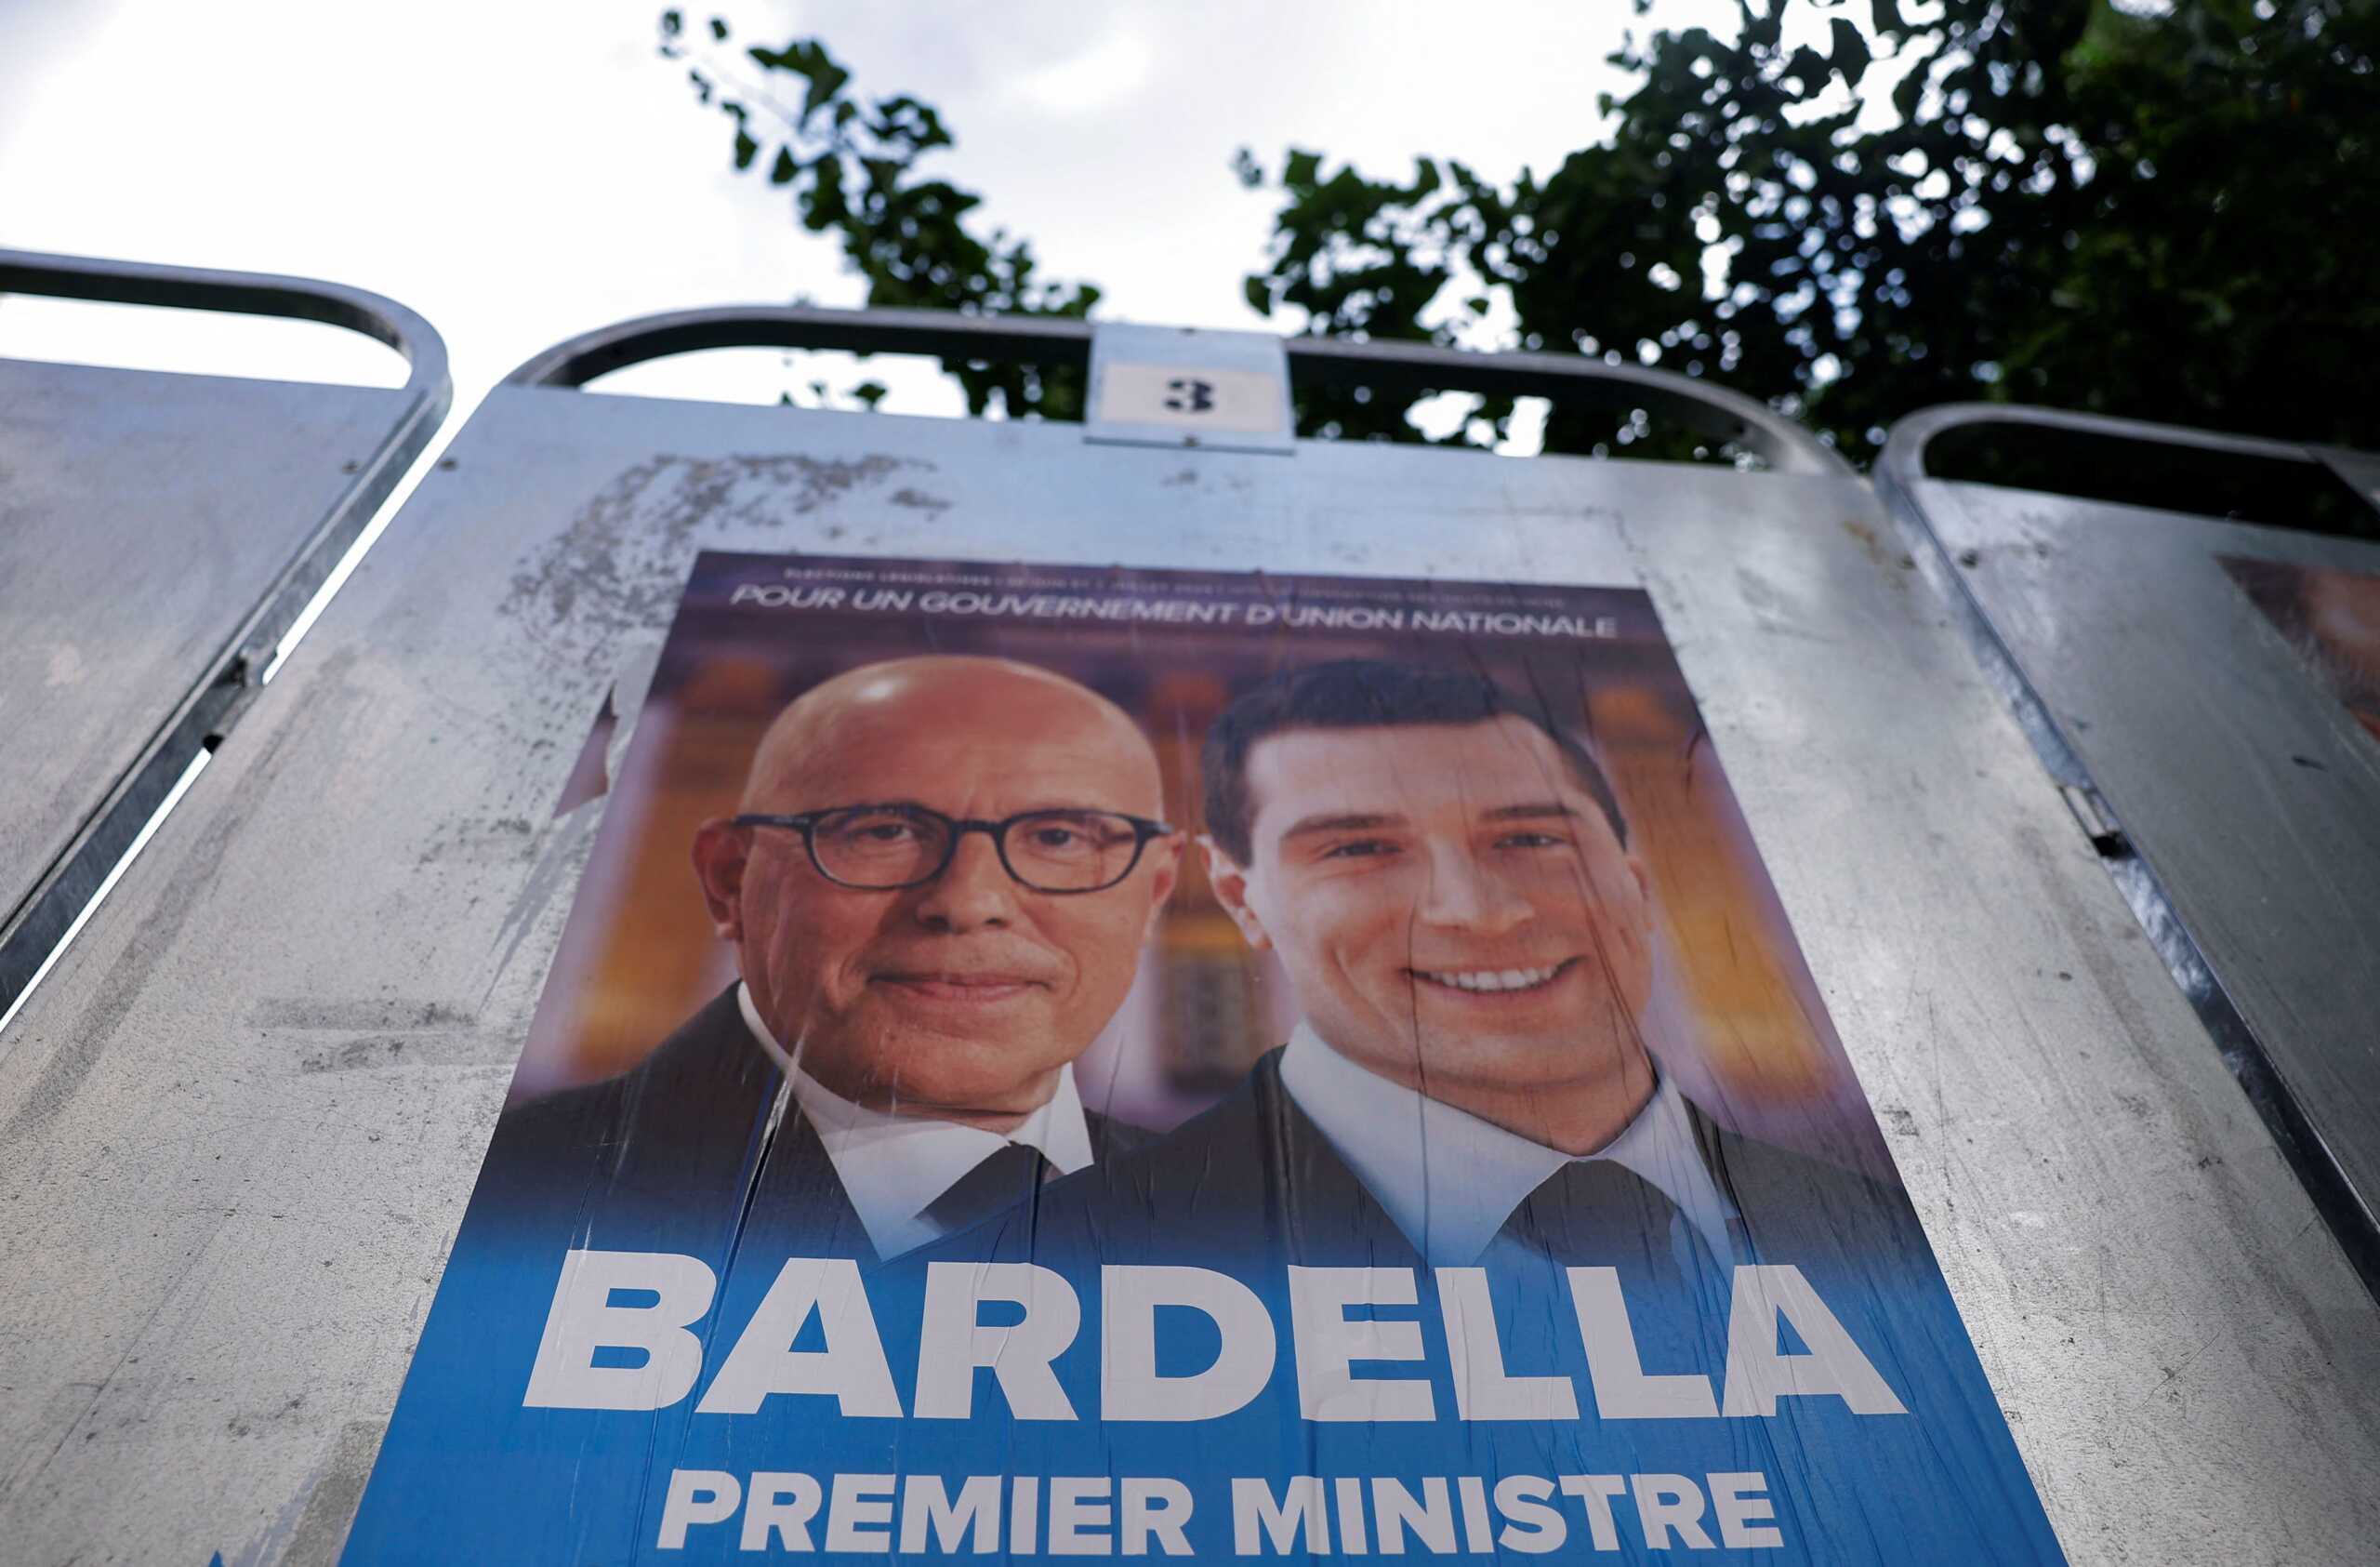 Εκλογές στη Γαλλία: Διαβουλεύσεις για τη συγκρότηση ρεπουμπλικανικού μετώπου απέναντι στην ακροδεξιά